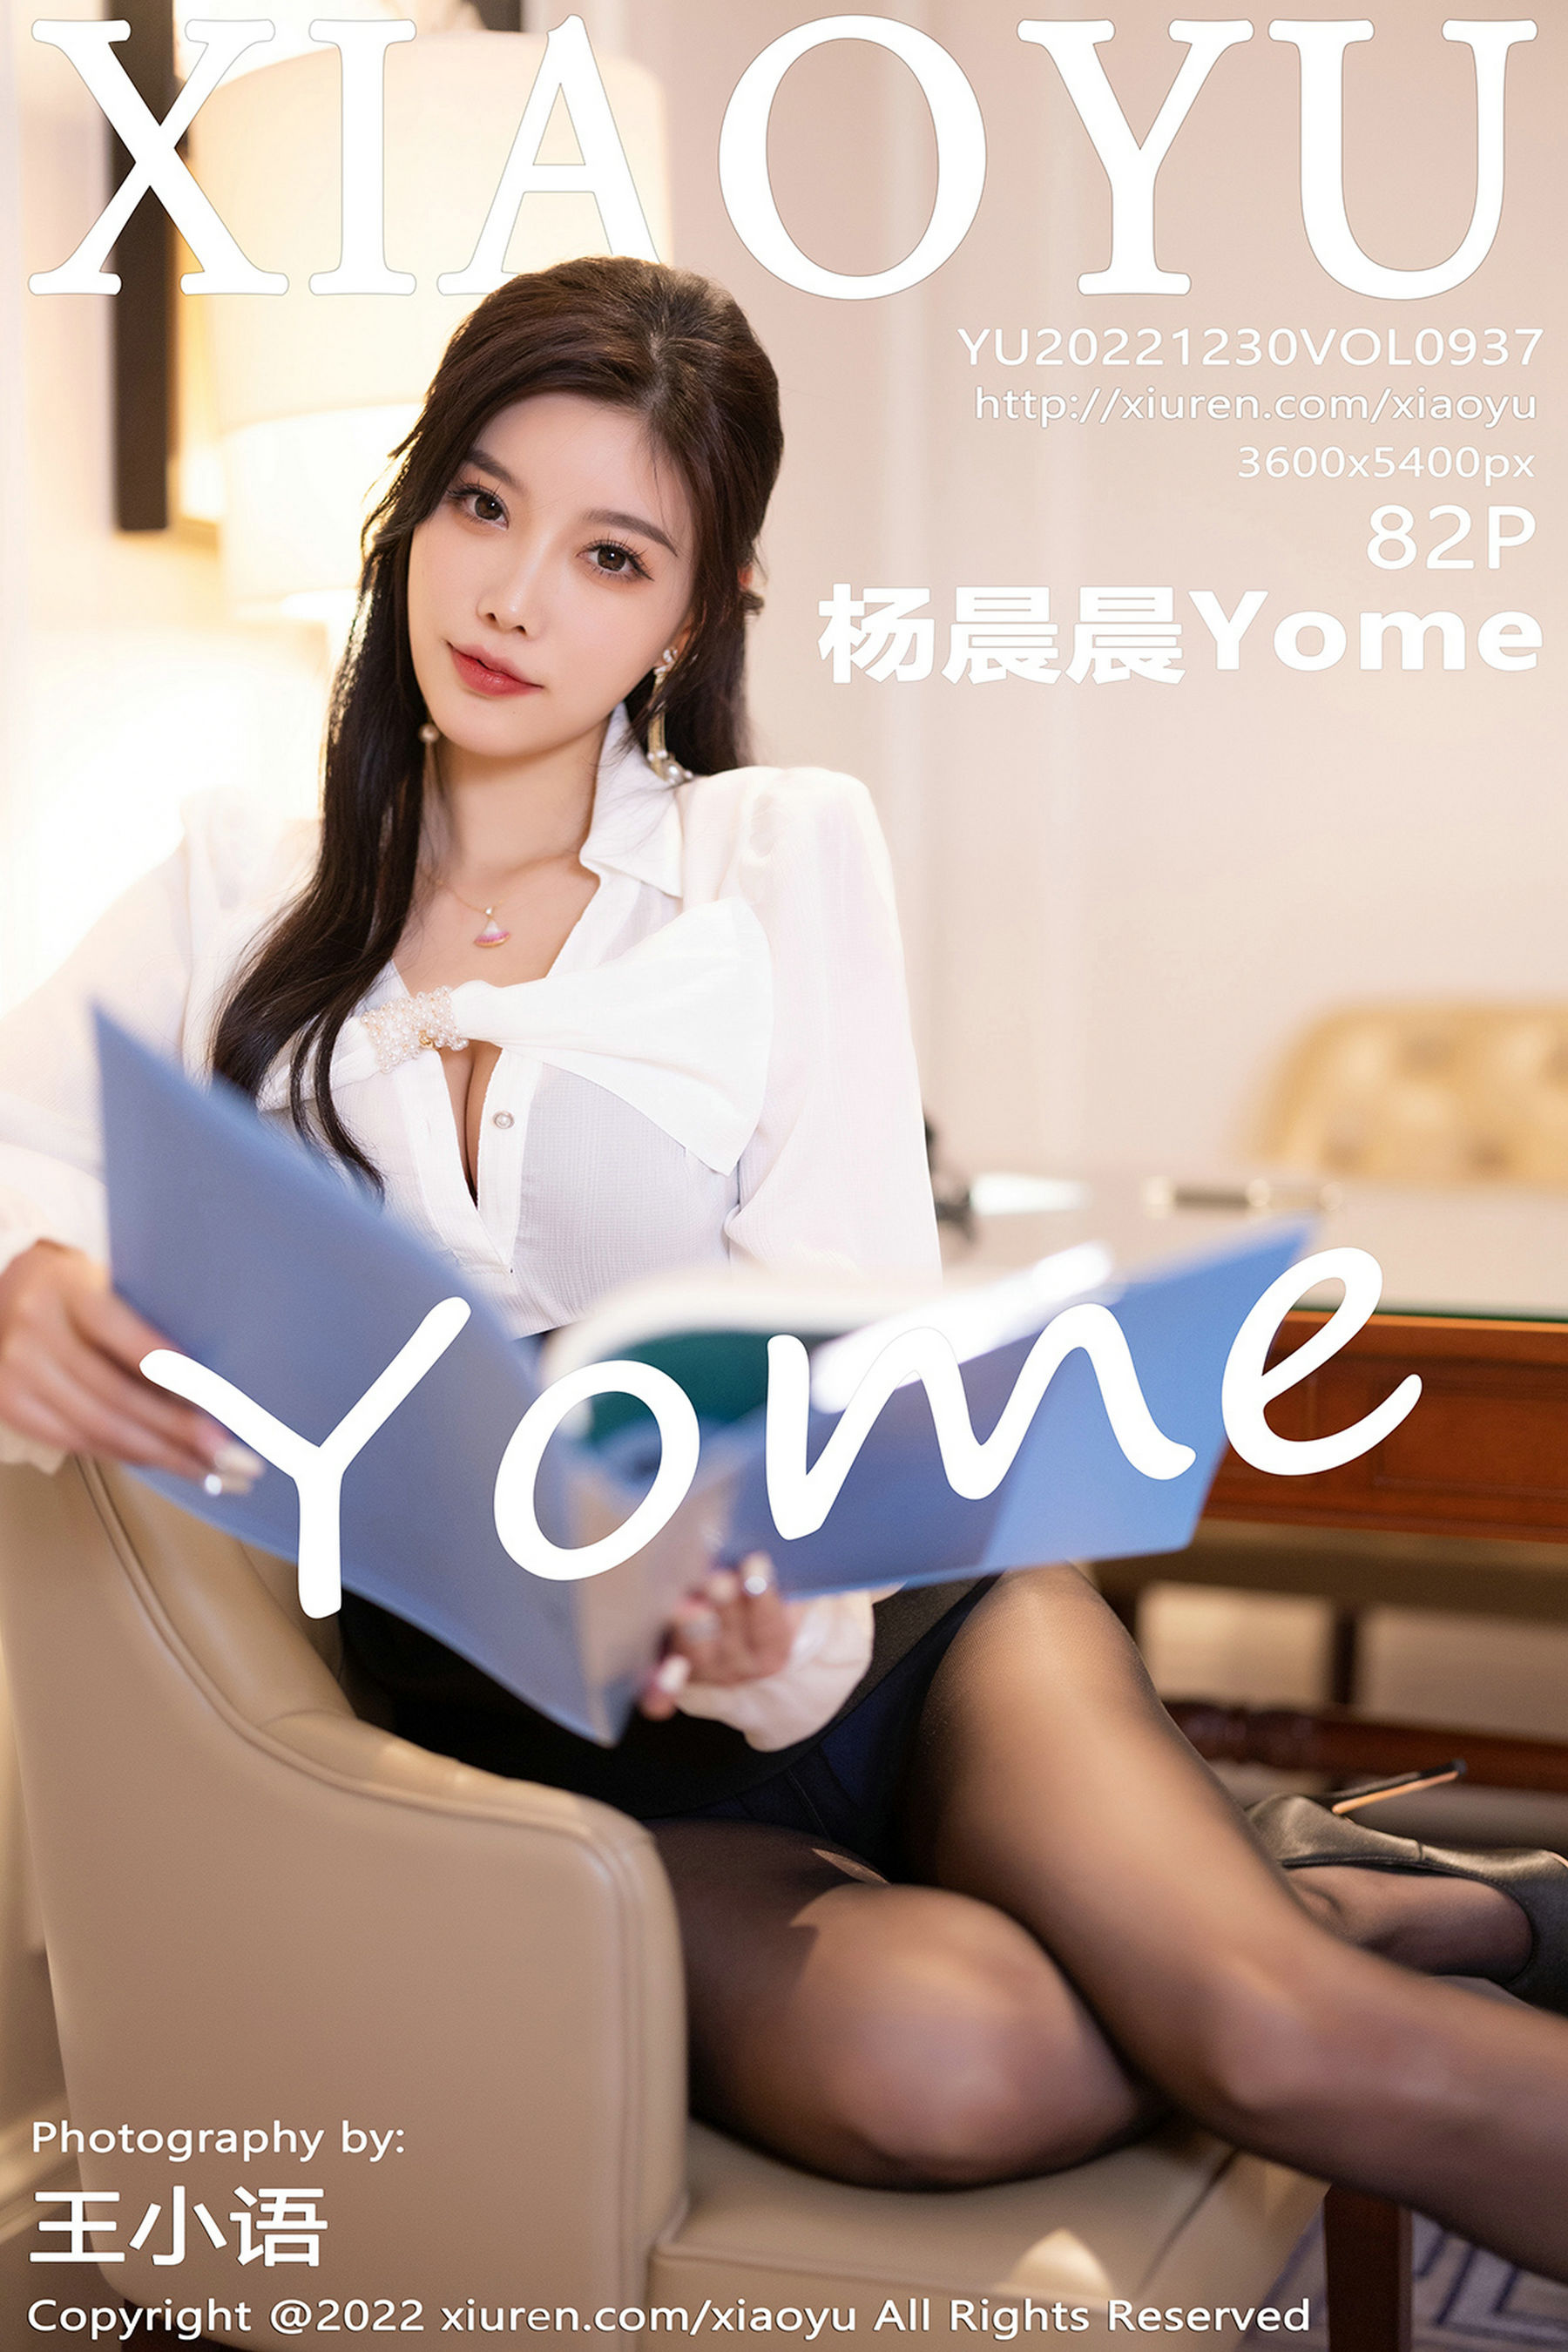 [语画界XIAOYU] Vol.937 杨晨晨Yome/(83P)